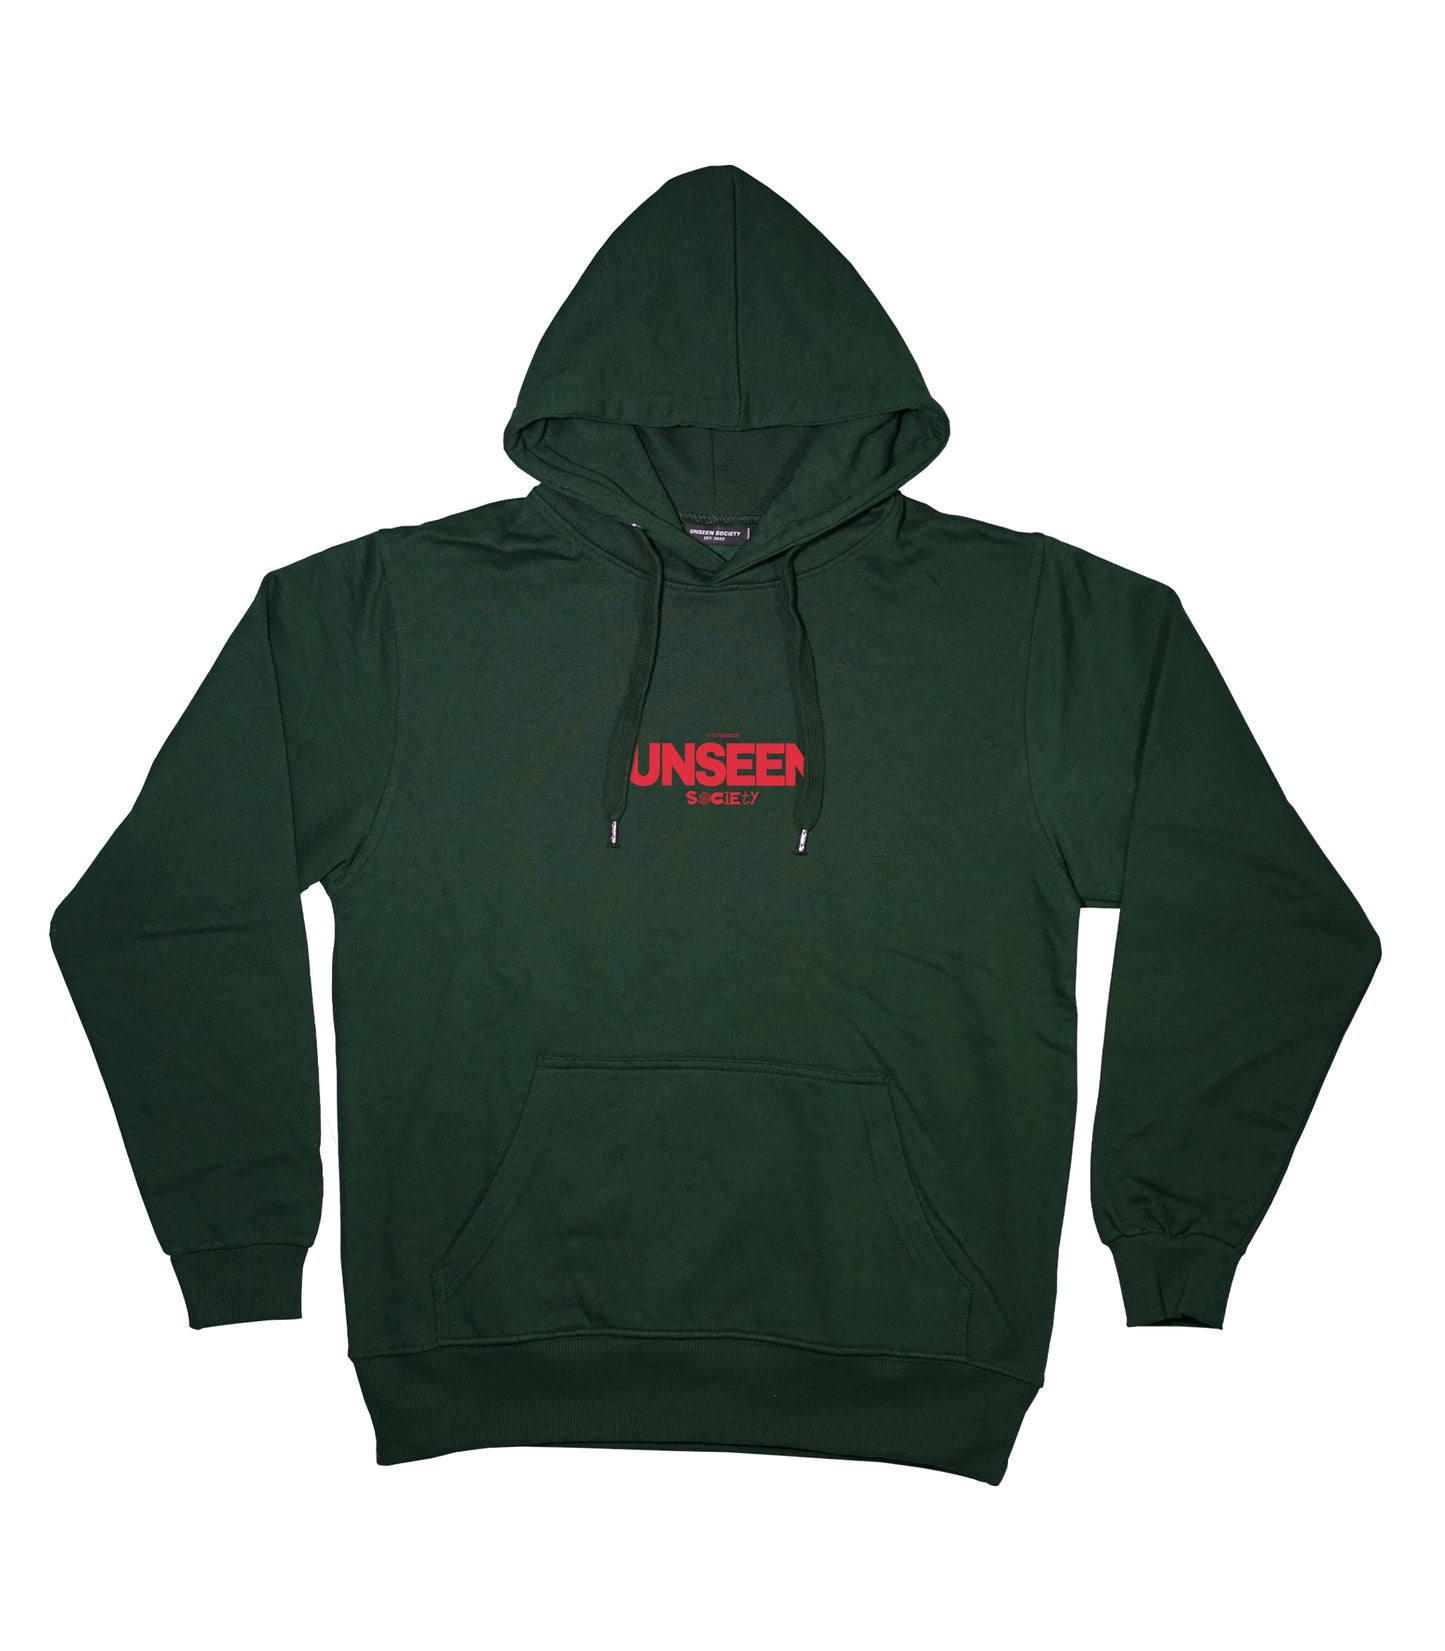 Unseen essential hoodie